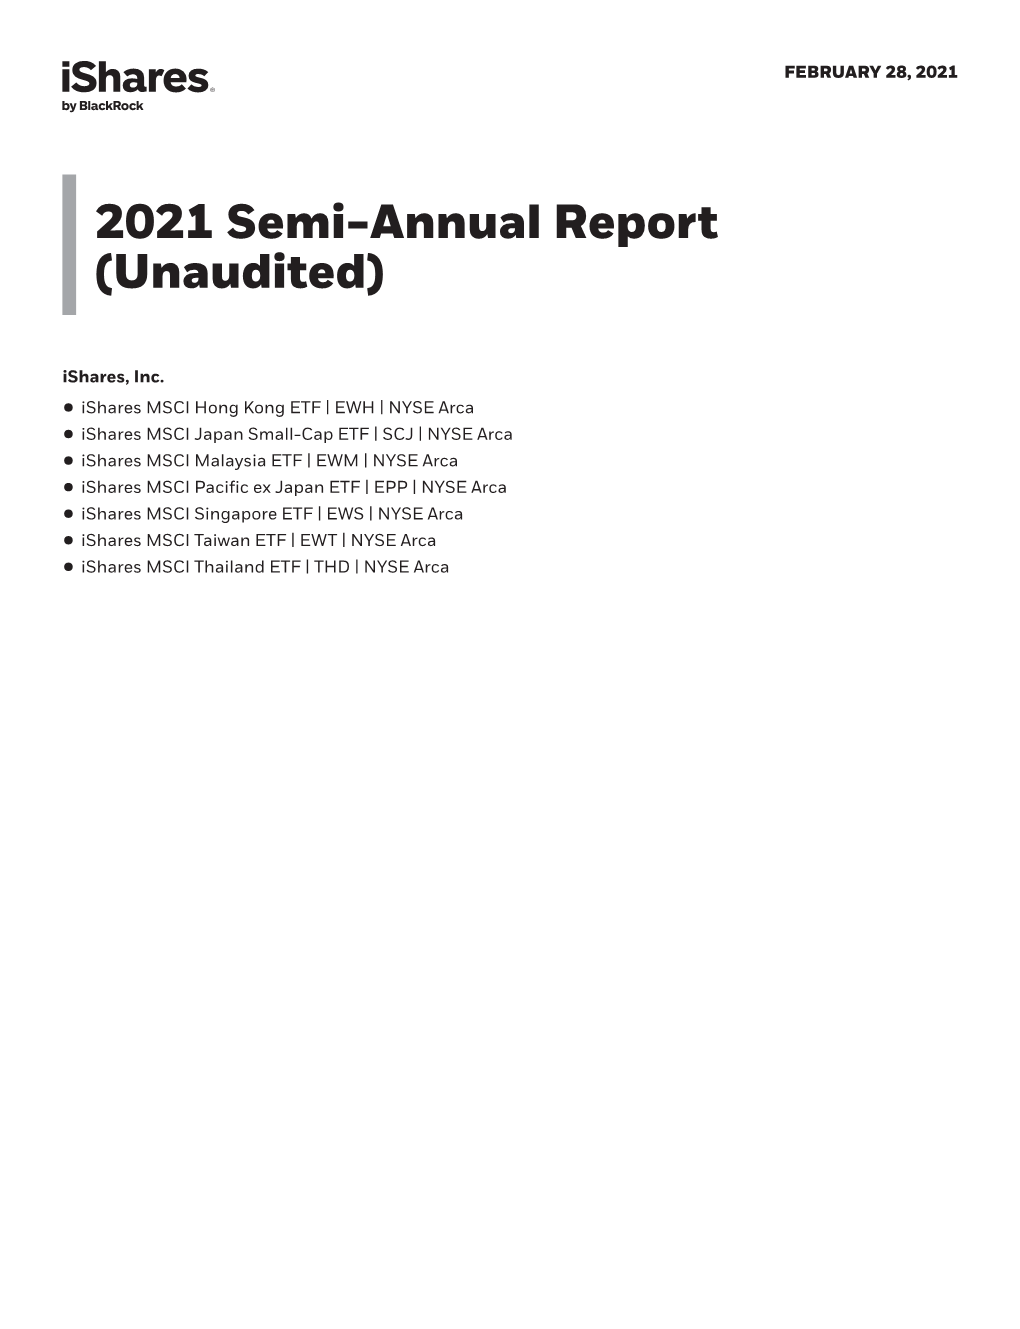 Semi-Annual Report (Unaudited) Ishares, Inc